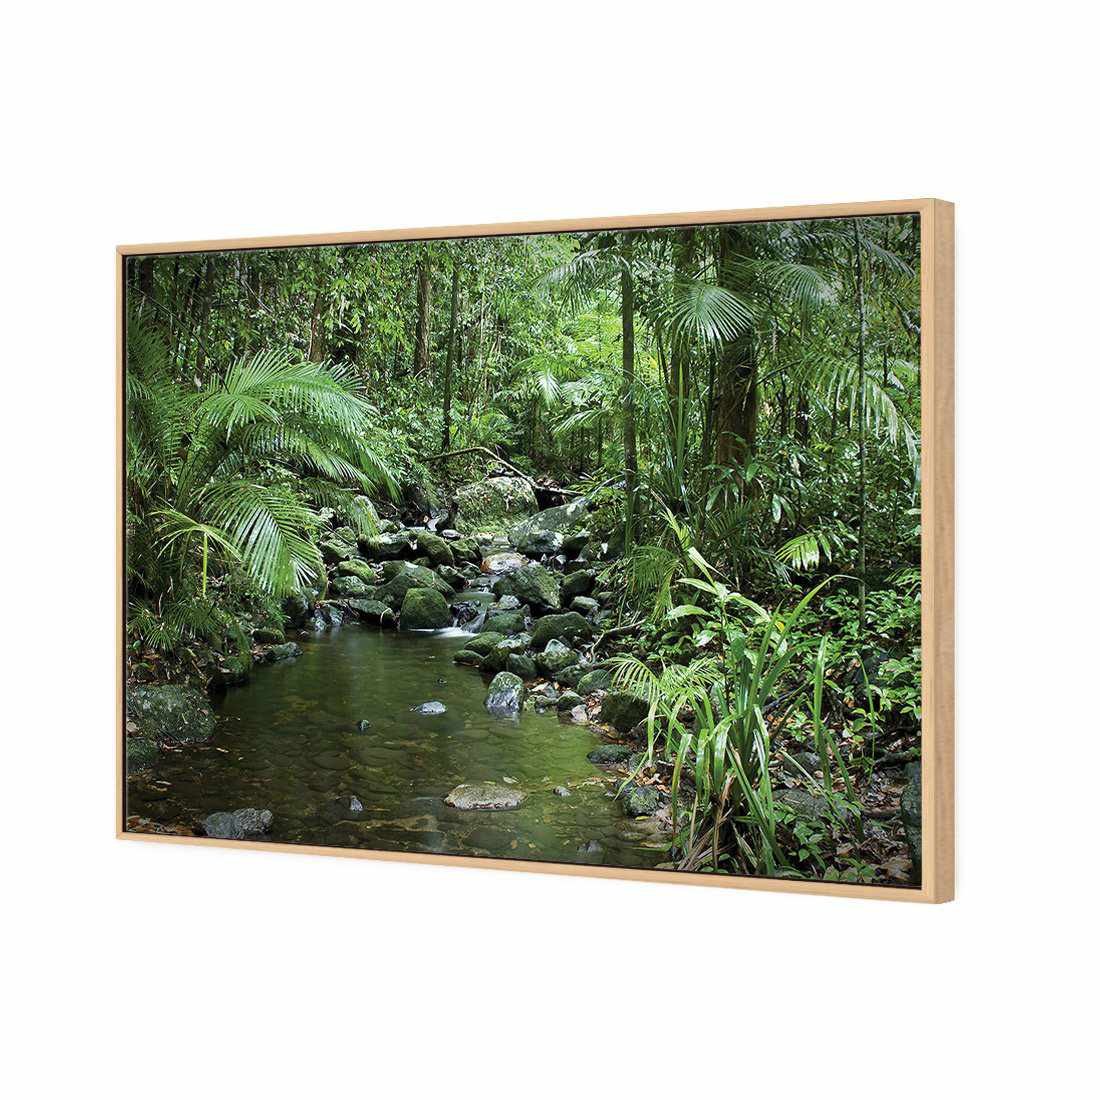 Mossman River In Daintree Rainforest Canvas Art-Canvas-Wall Art Designs-45x30cm-Canvas - Oak Frame-Wall Art Designs